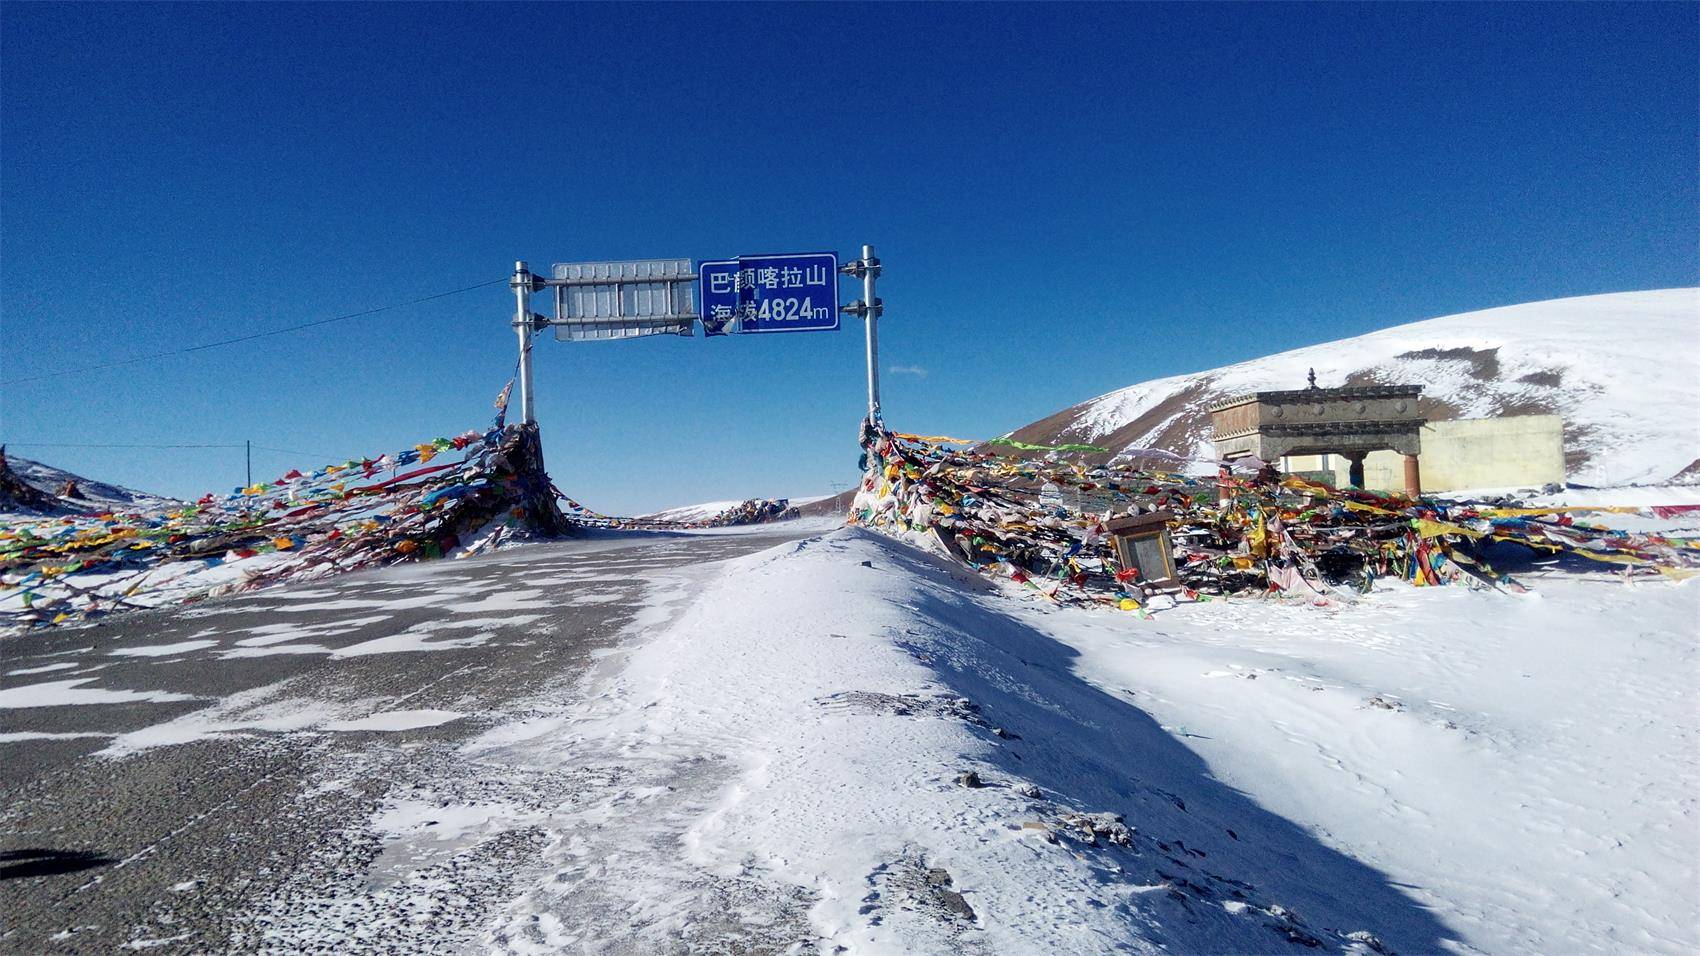 巴颜喀拉山，蒙古语的意思是“富饶青色的山”，位于青海中南部，为昆仑山脉南支，西接可可西里山，东连岷山和邛崃山，是长江与黄河源流区的分水岭。巴颜喀拉山海拔5000米，最高峰果洛山海拔 5369米。旧称巴颜喀喇山。藏语叫“职权玛尼木占木松”，即祖山的意思